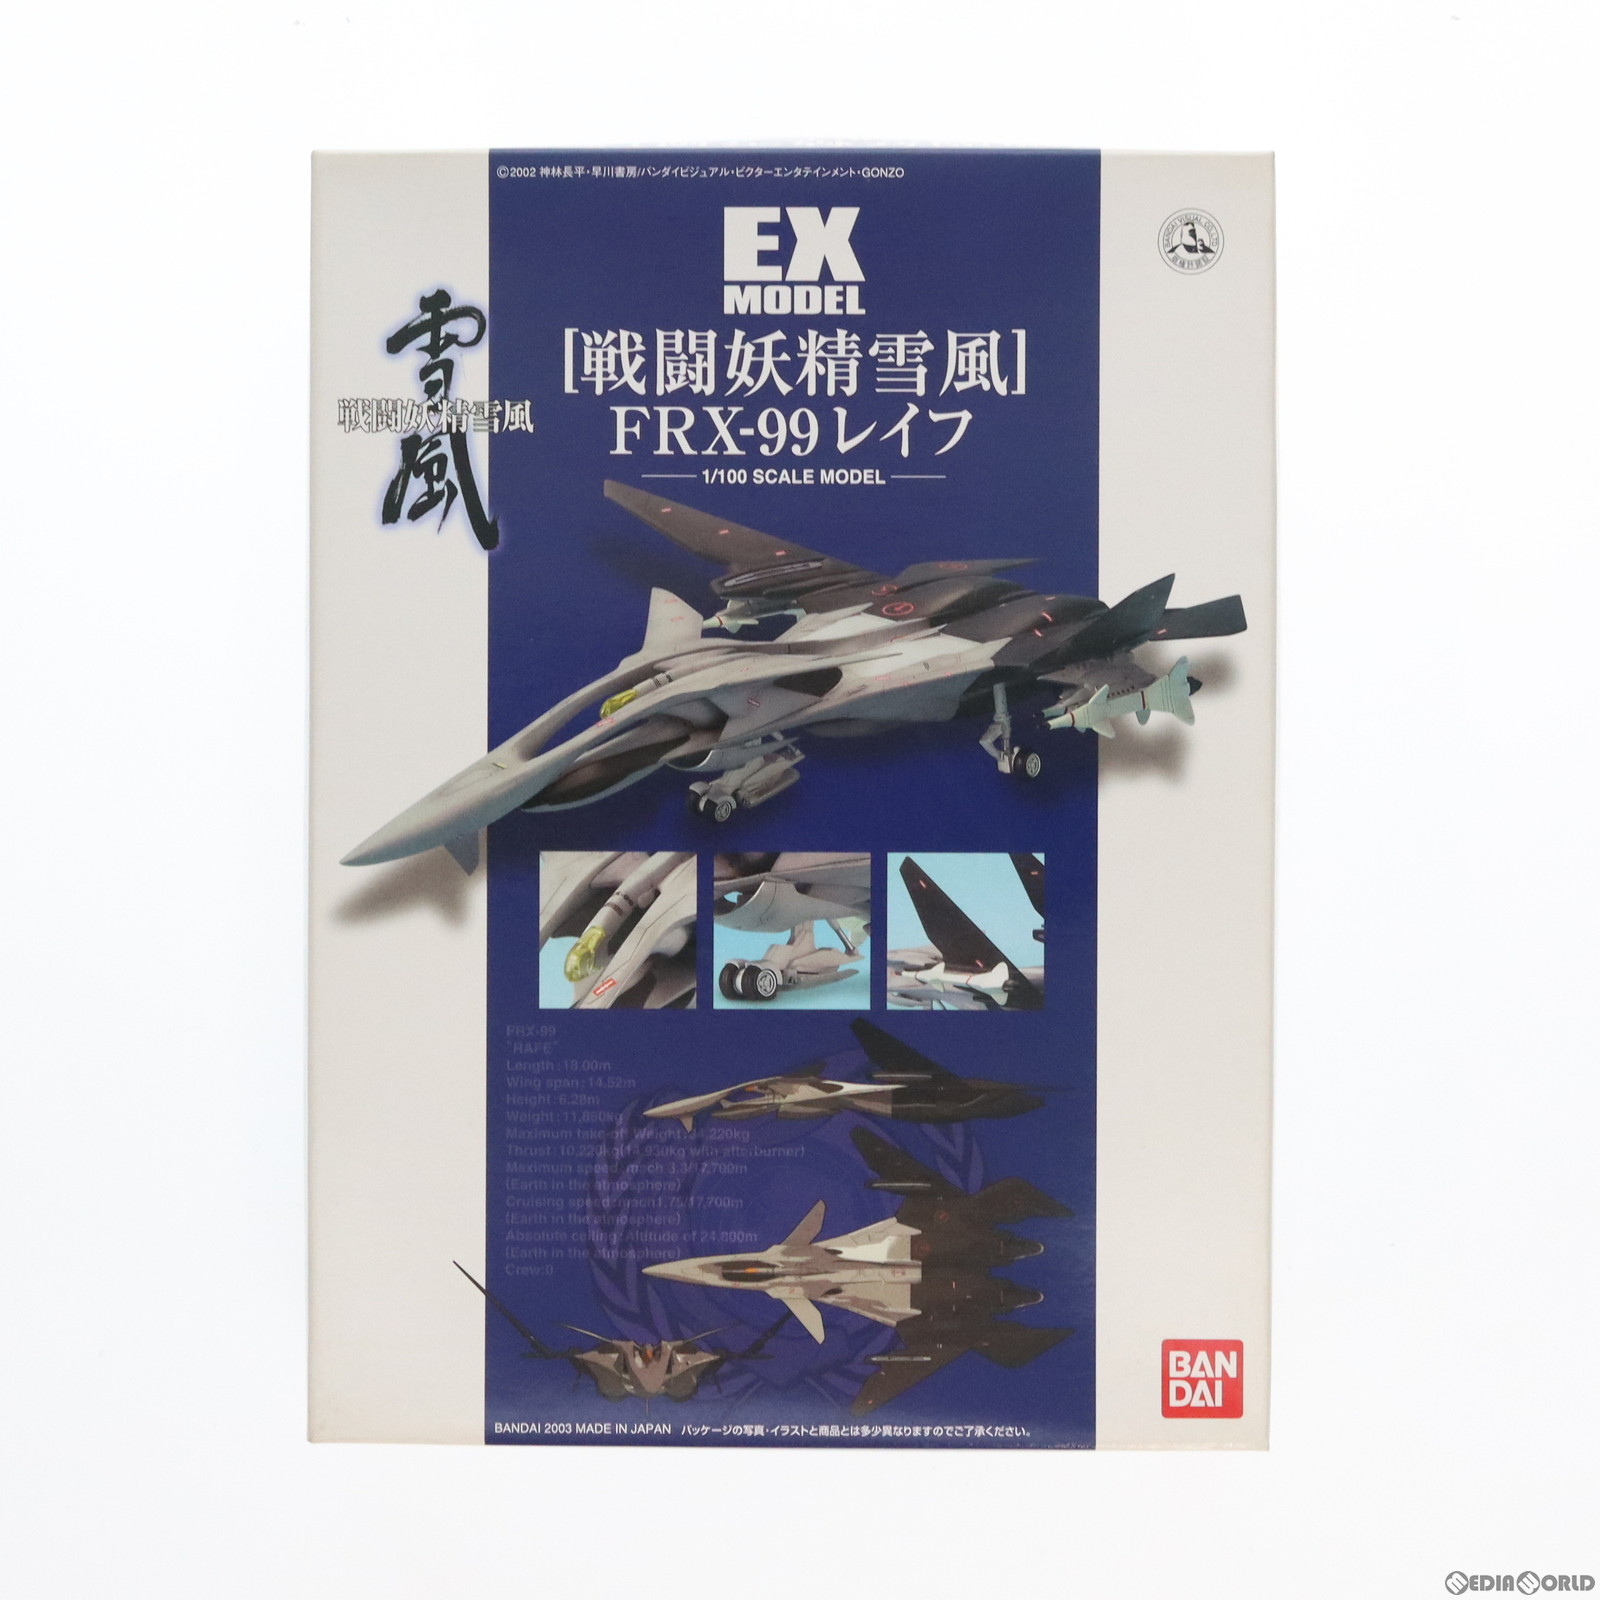 【中古即納】[PTM]EX MODEL-17 1/100 FRX-99 レイフ 戦闘妖精雪風 プラモデル(0122249) バンダイ(19991231)